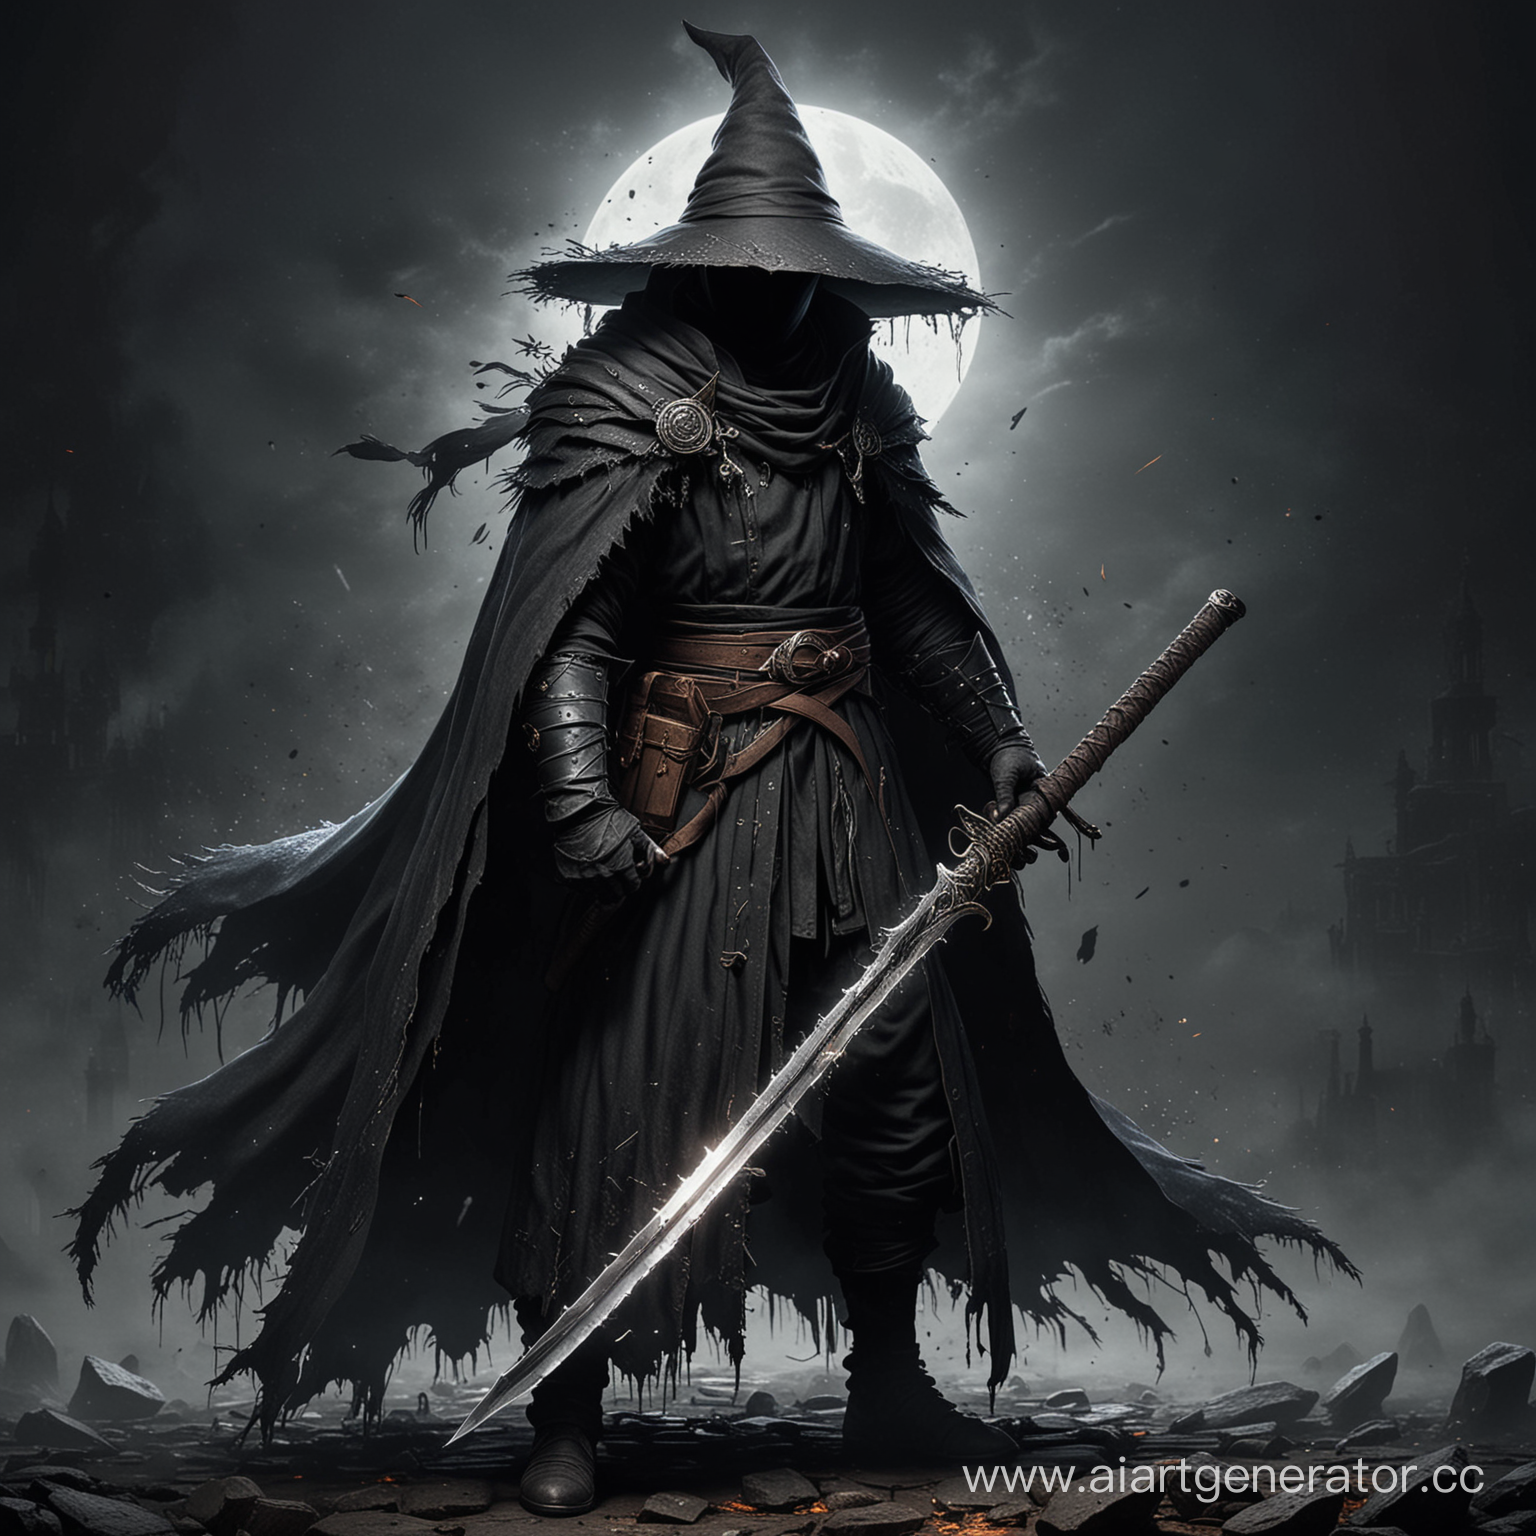 черный маг с катаной в длинной накидке с оборванными нитками на краях в стиле dark souls